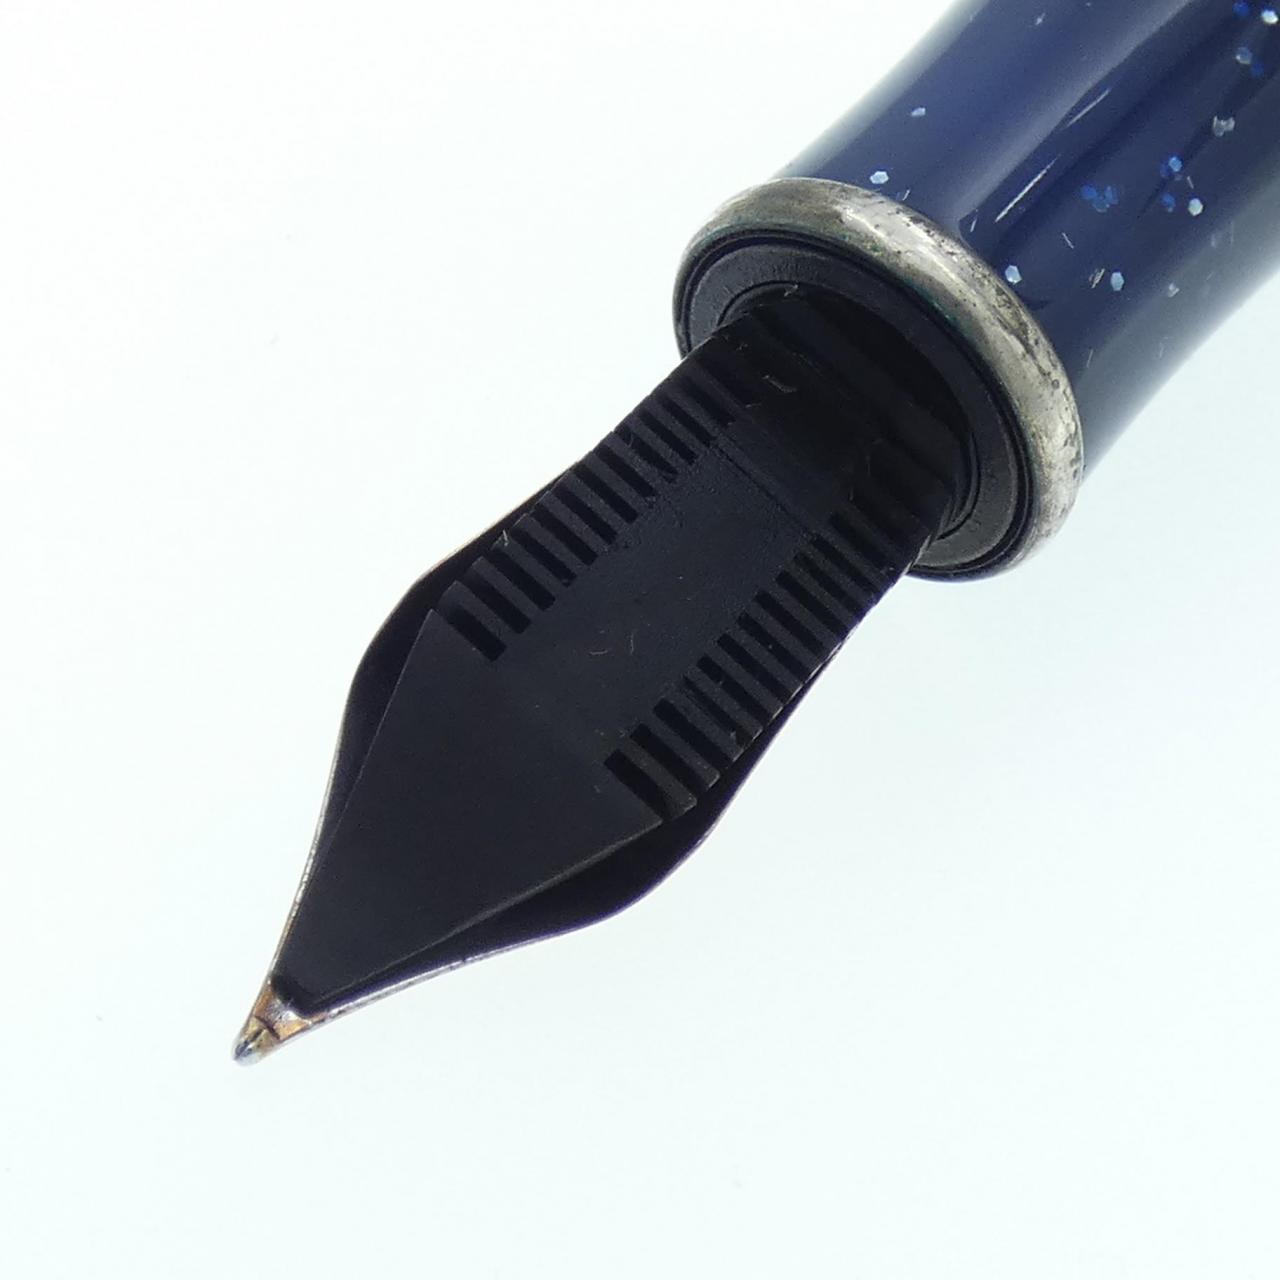 Monetegrappa 88 週年限量版鋼筆